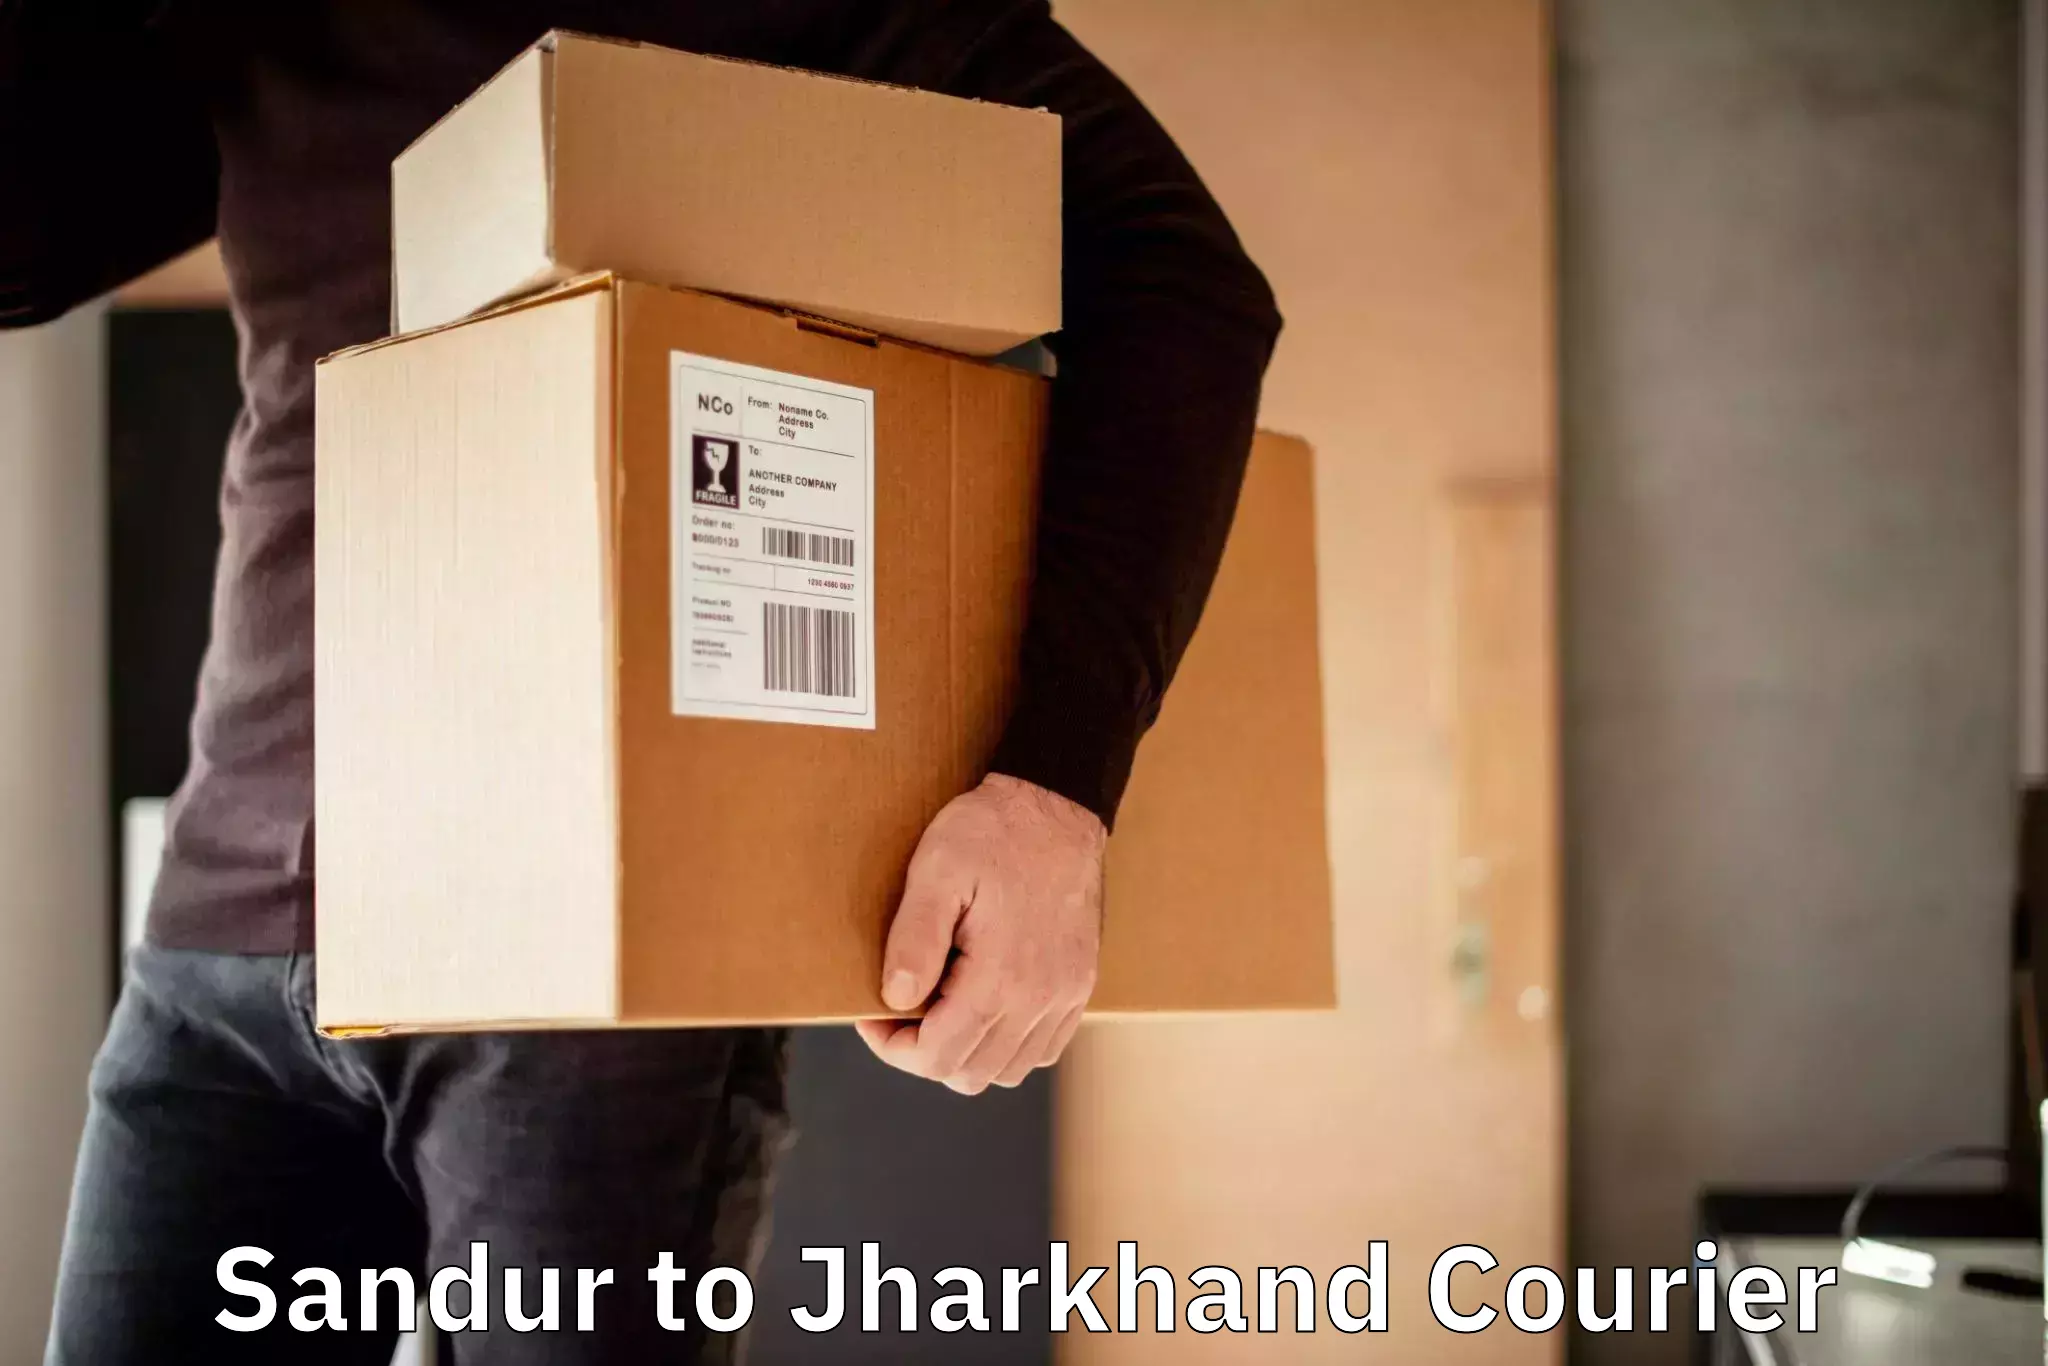 Custom courier packaging in Sandur to Padma Hazaribagh